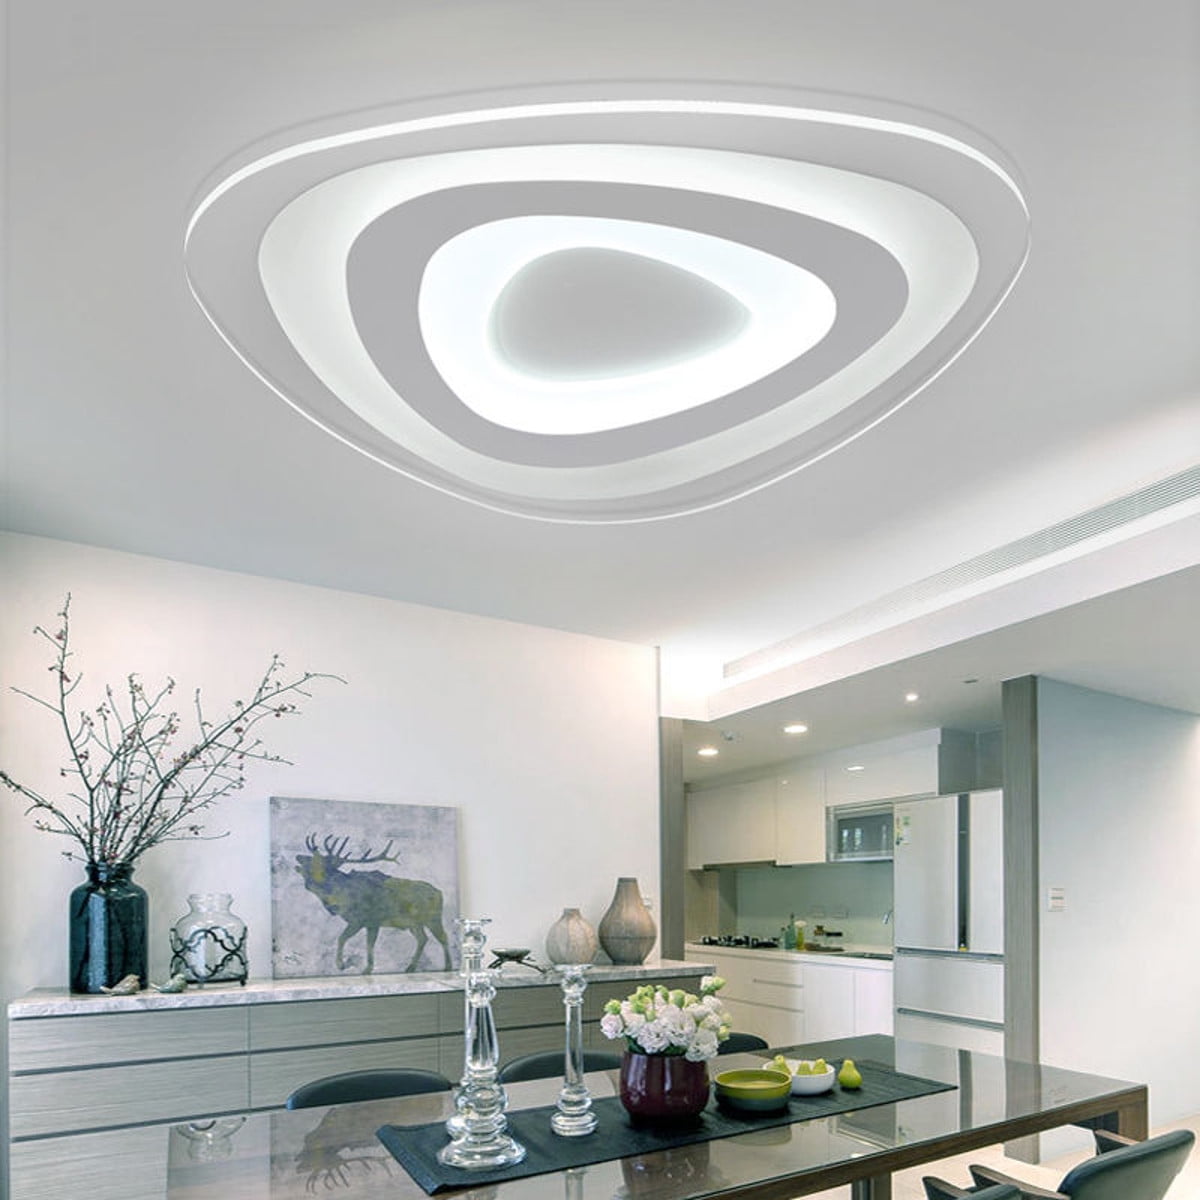 Modern Ultra Thin Led Ceiling Light, Modern Led Ceiling Lights For Kitchen